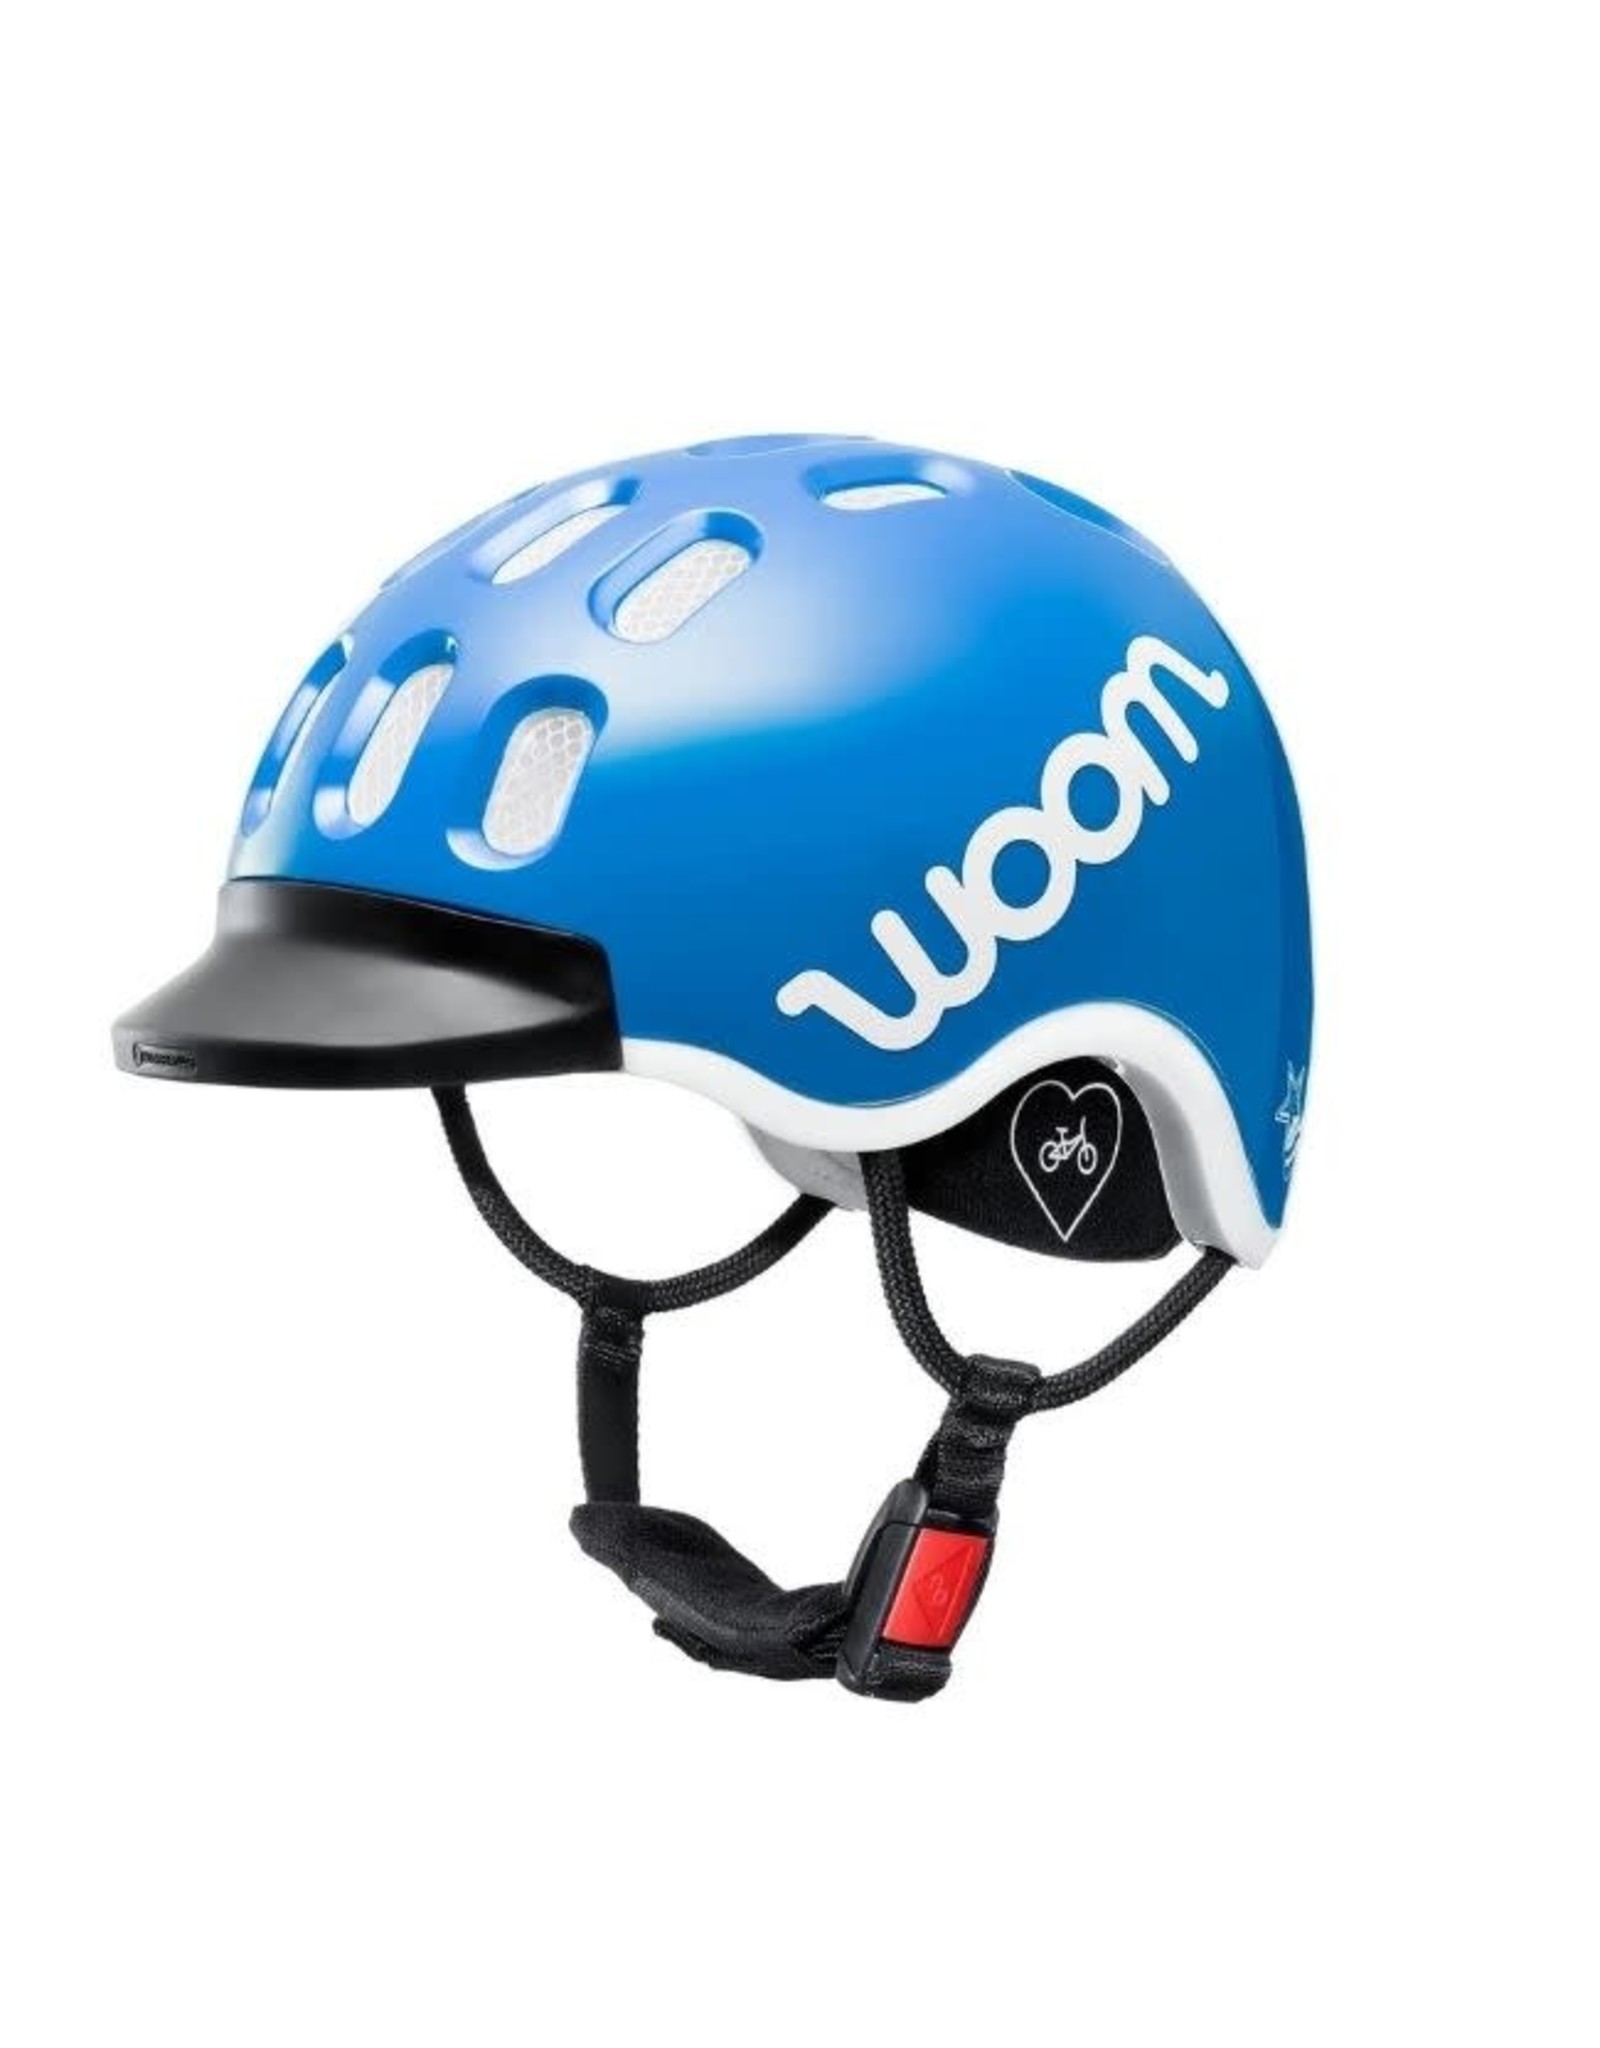 woom woom helmet - IN STORE PICK UP ONLY